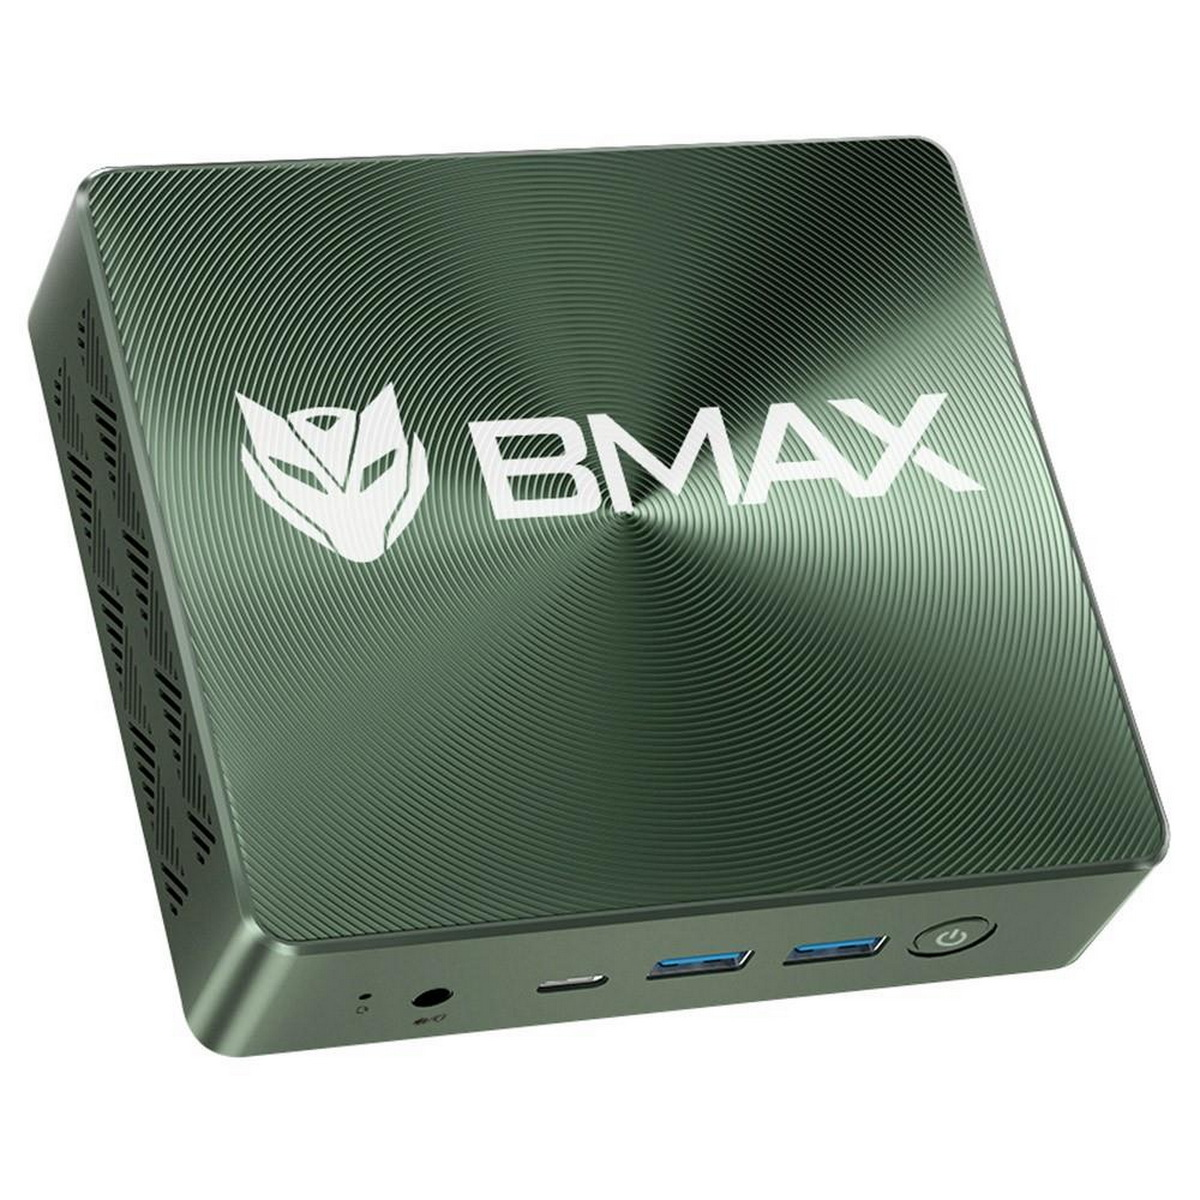 SSD, 512 Intel® BMAX PRO, GB Graphics Mini-PC, Iris® B6 16 RAM, GB Plus